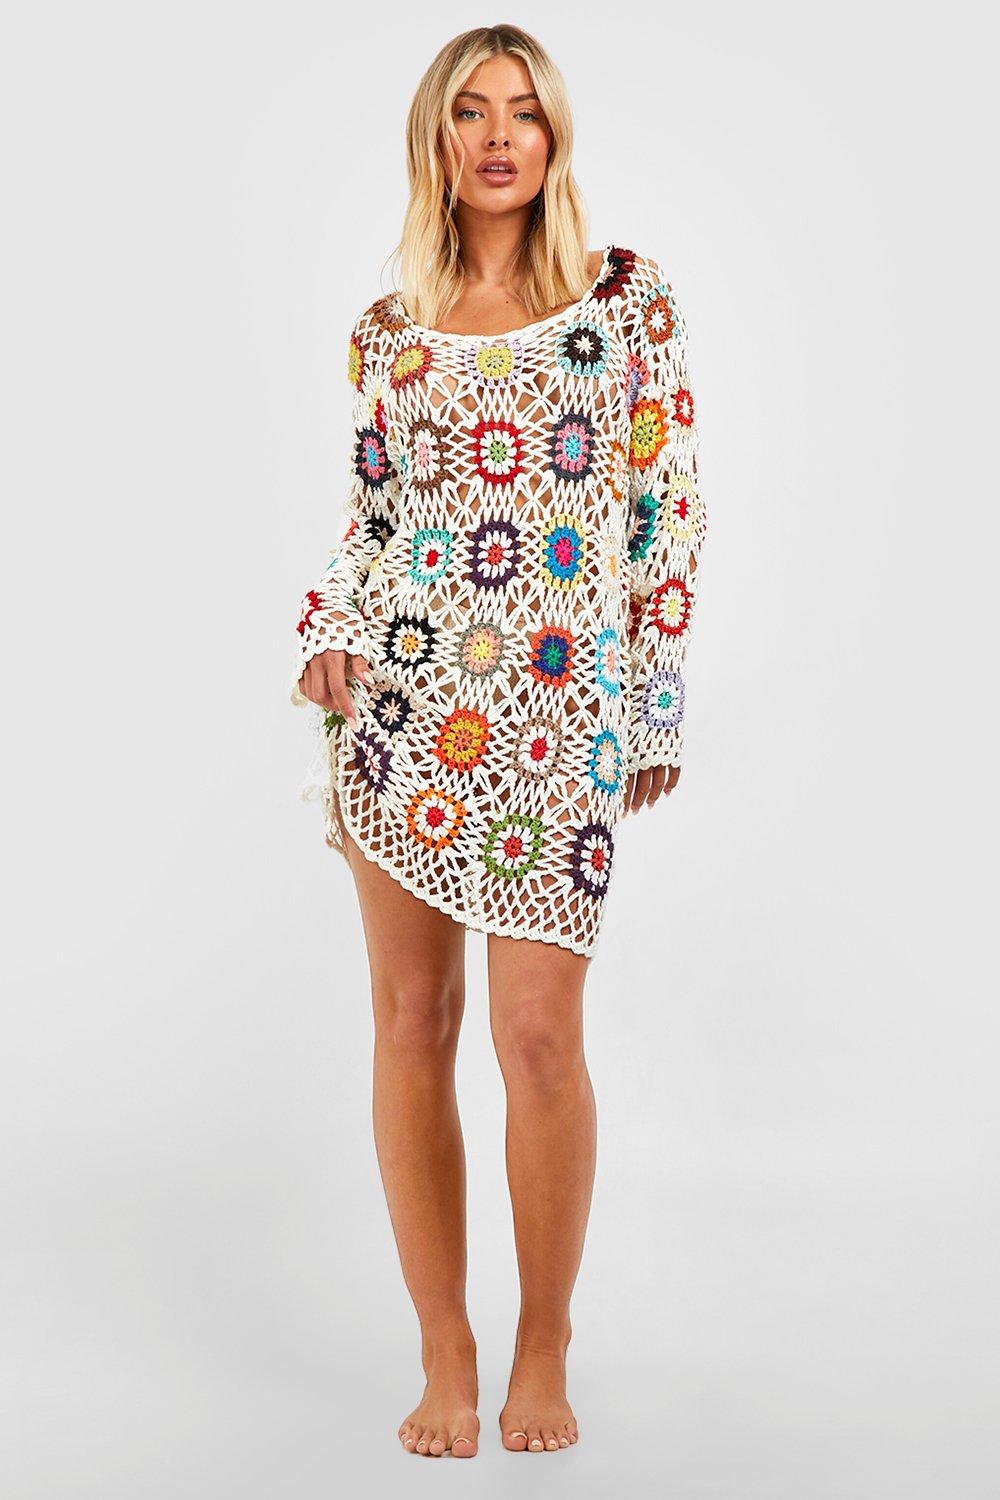 Crochet Patchwork Cover Up Beach Dress